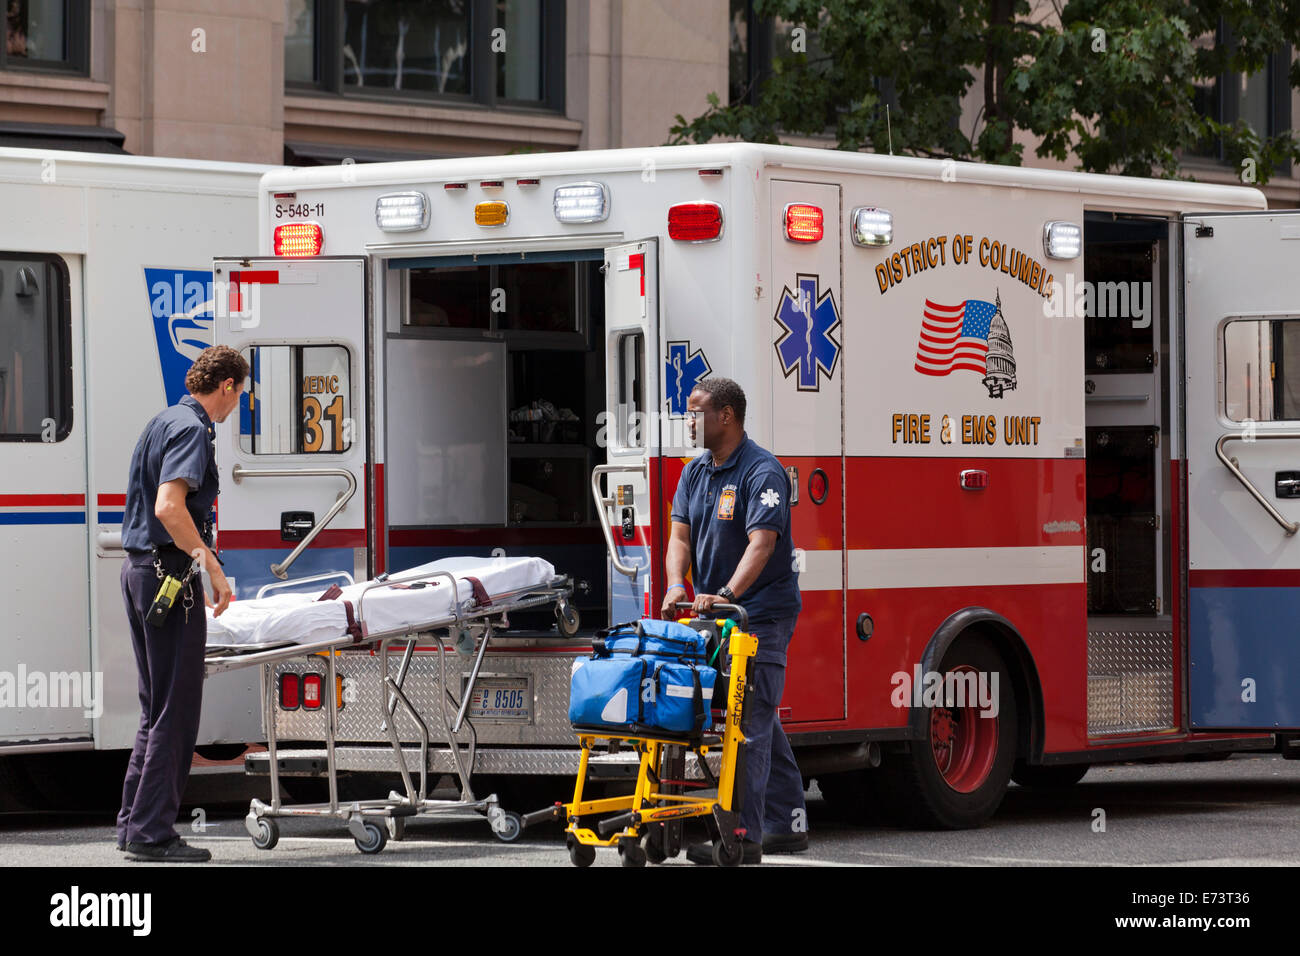 EMTs loading stretcher on EMS ambulance - Washington, DC USA Stock Photo